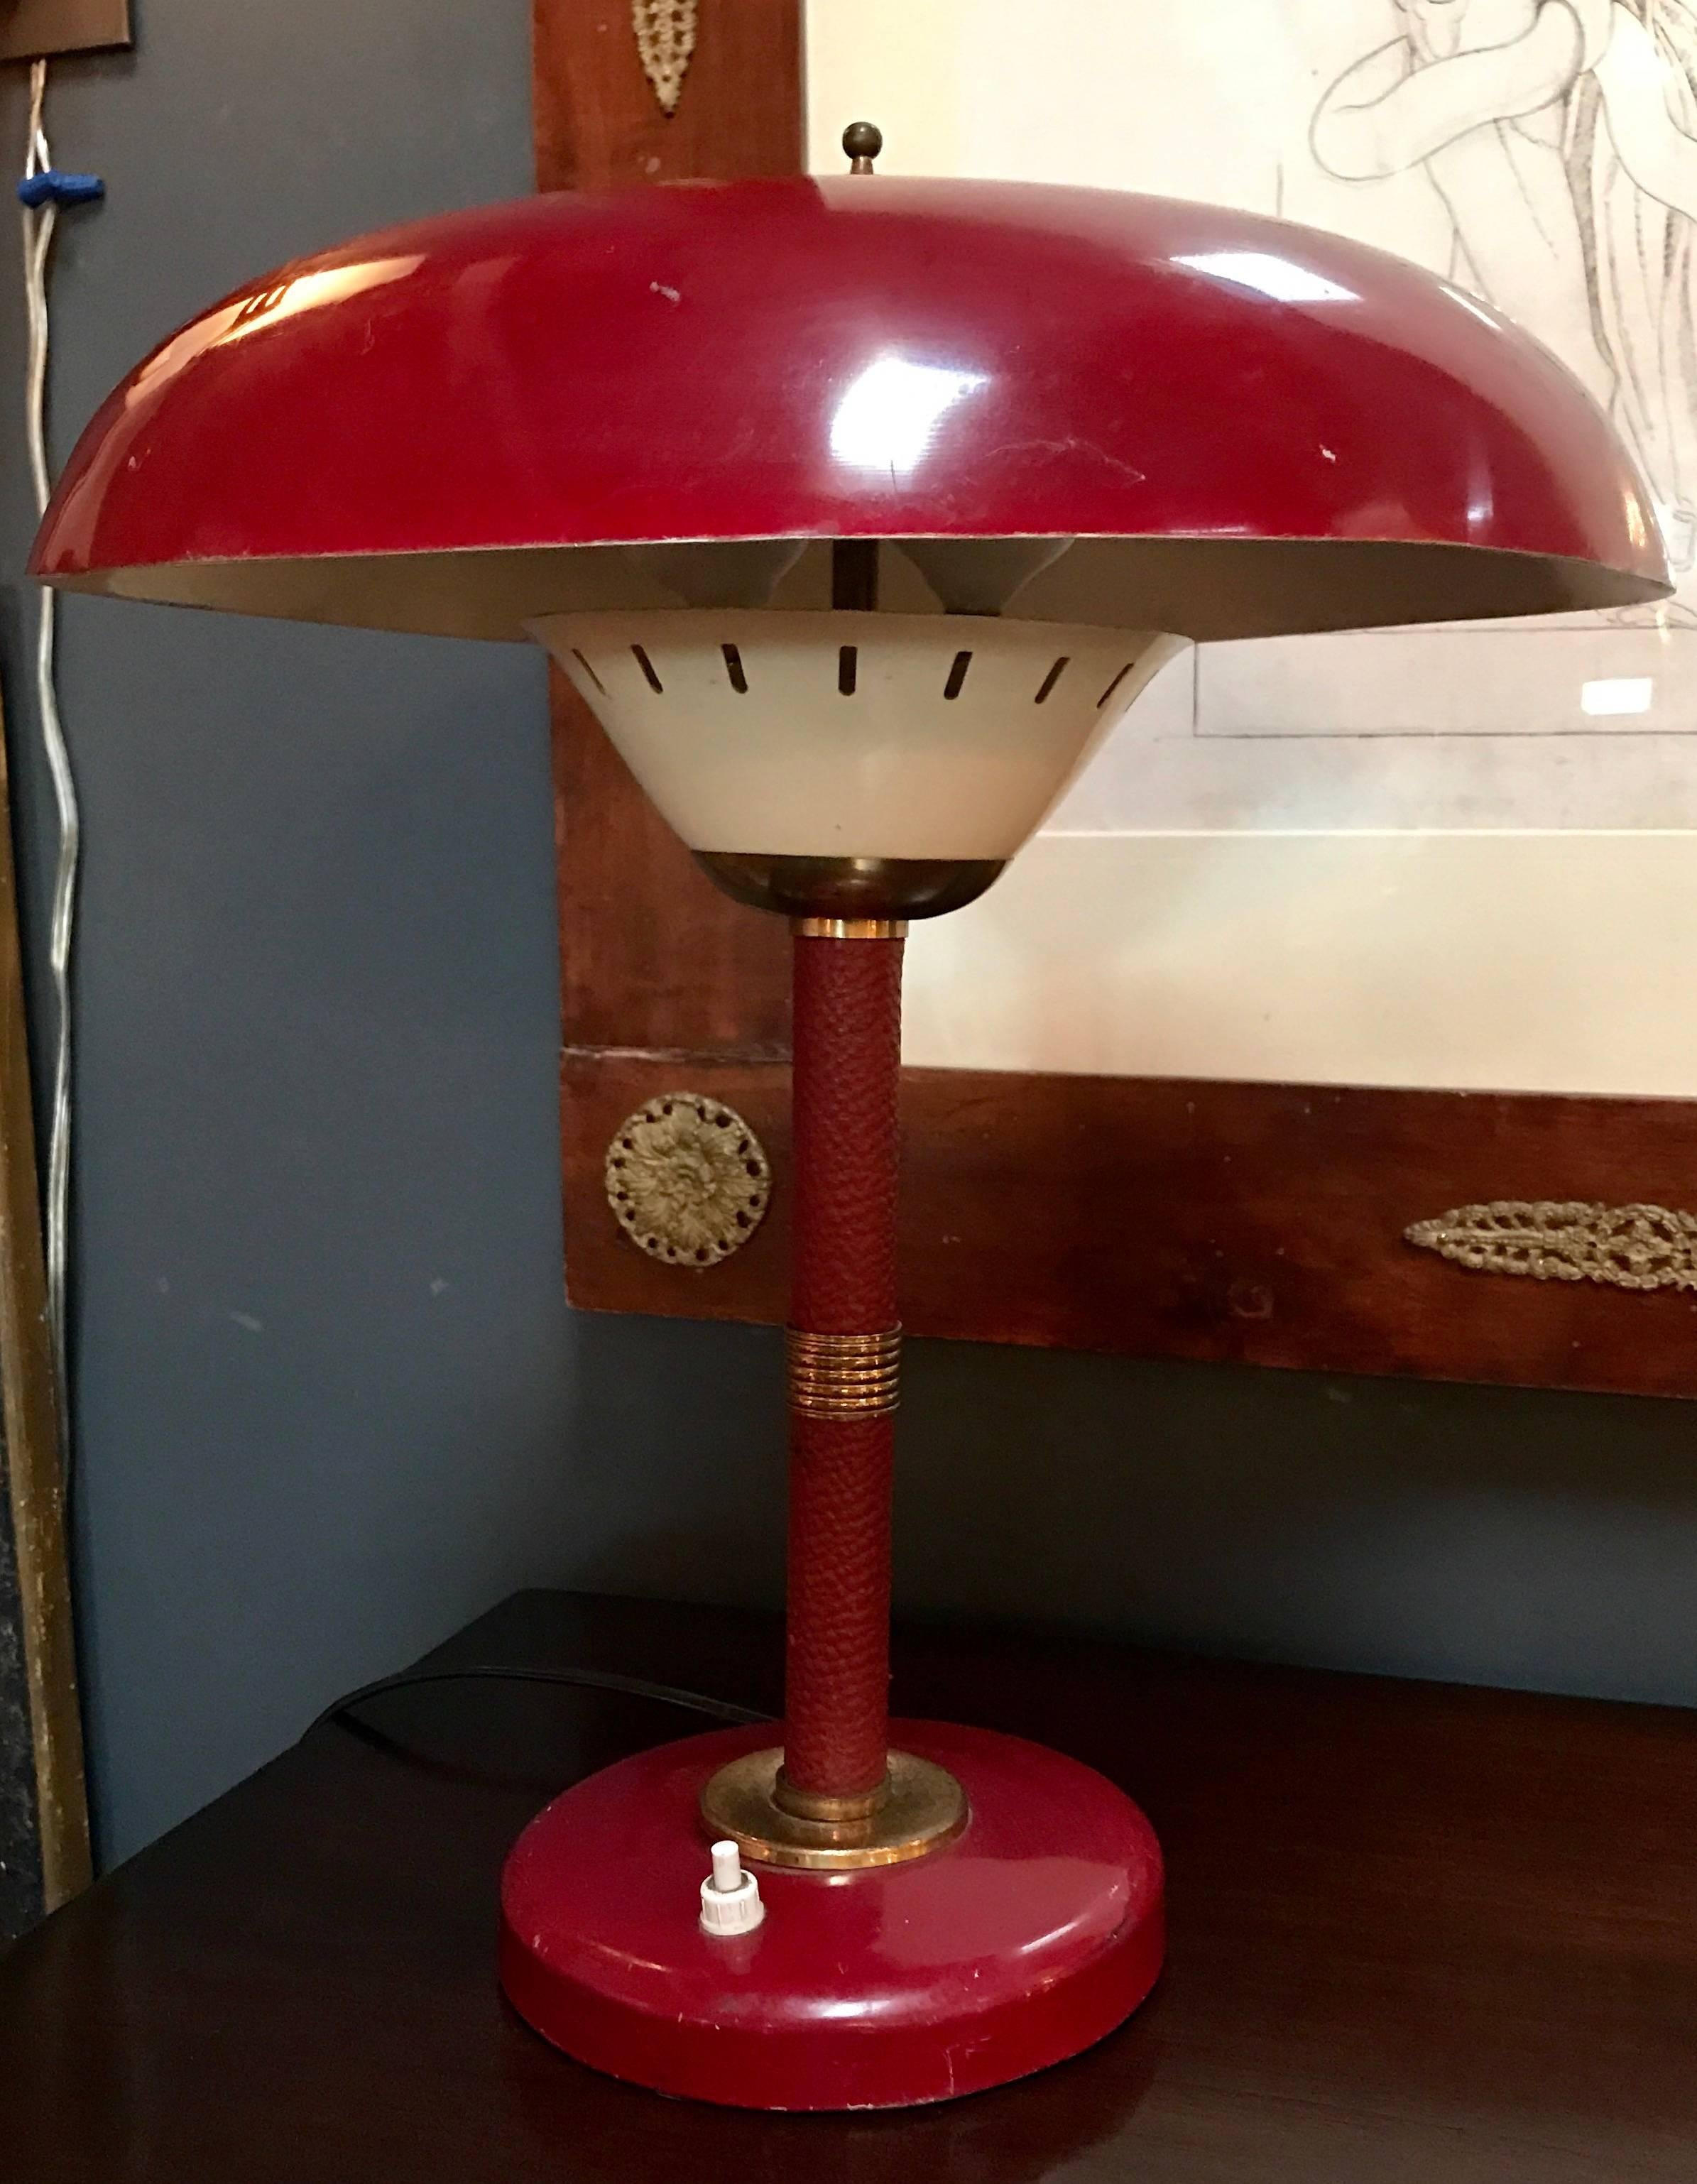 Italienische Tischlampe 1950er Jahre mit original rotem Leder und Messing.
Arredoluce zugeschrieben
Frechdachs!